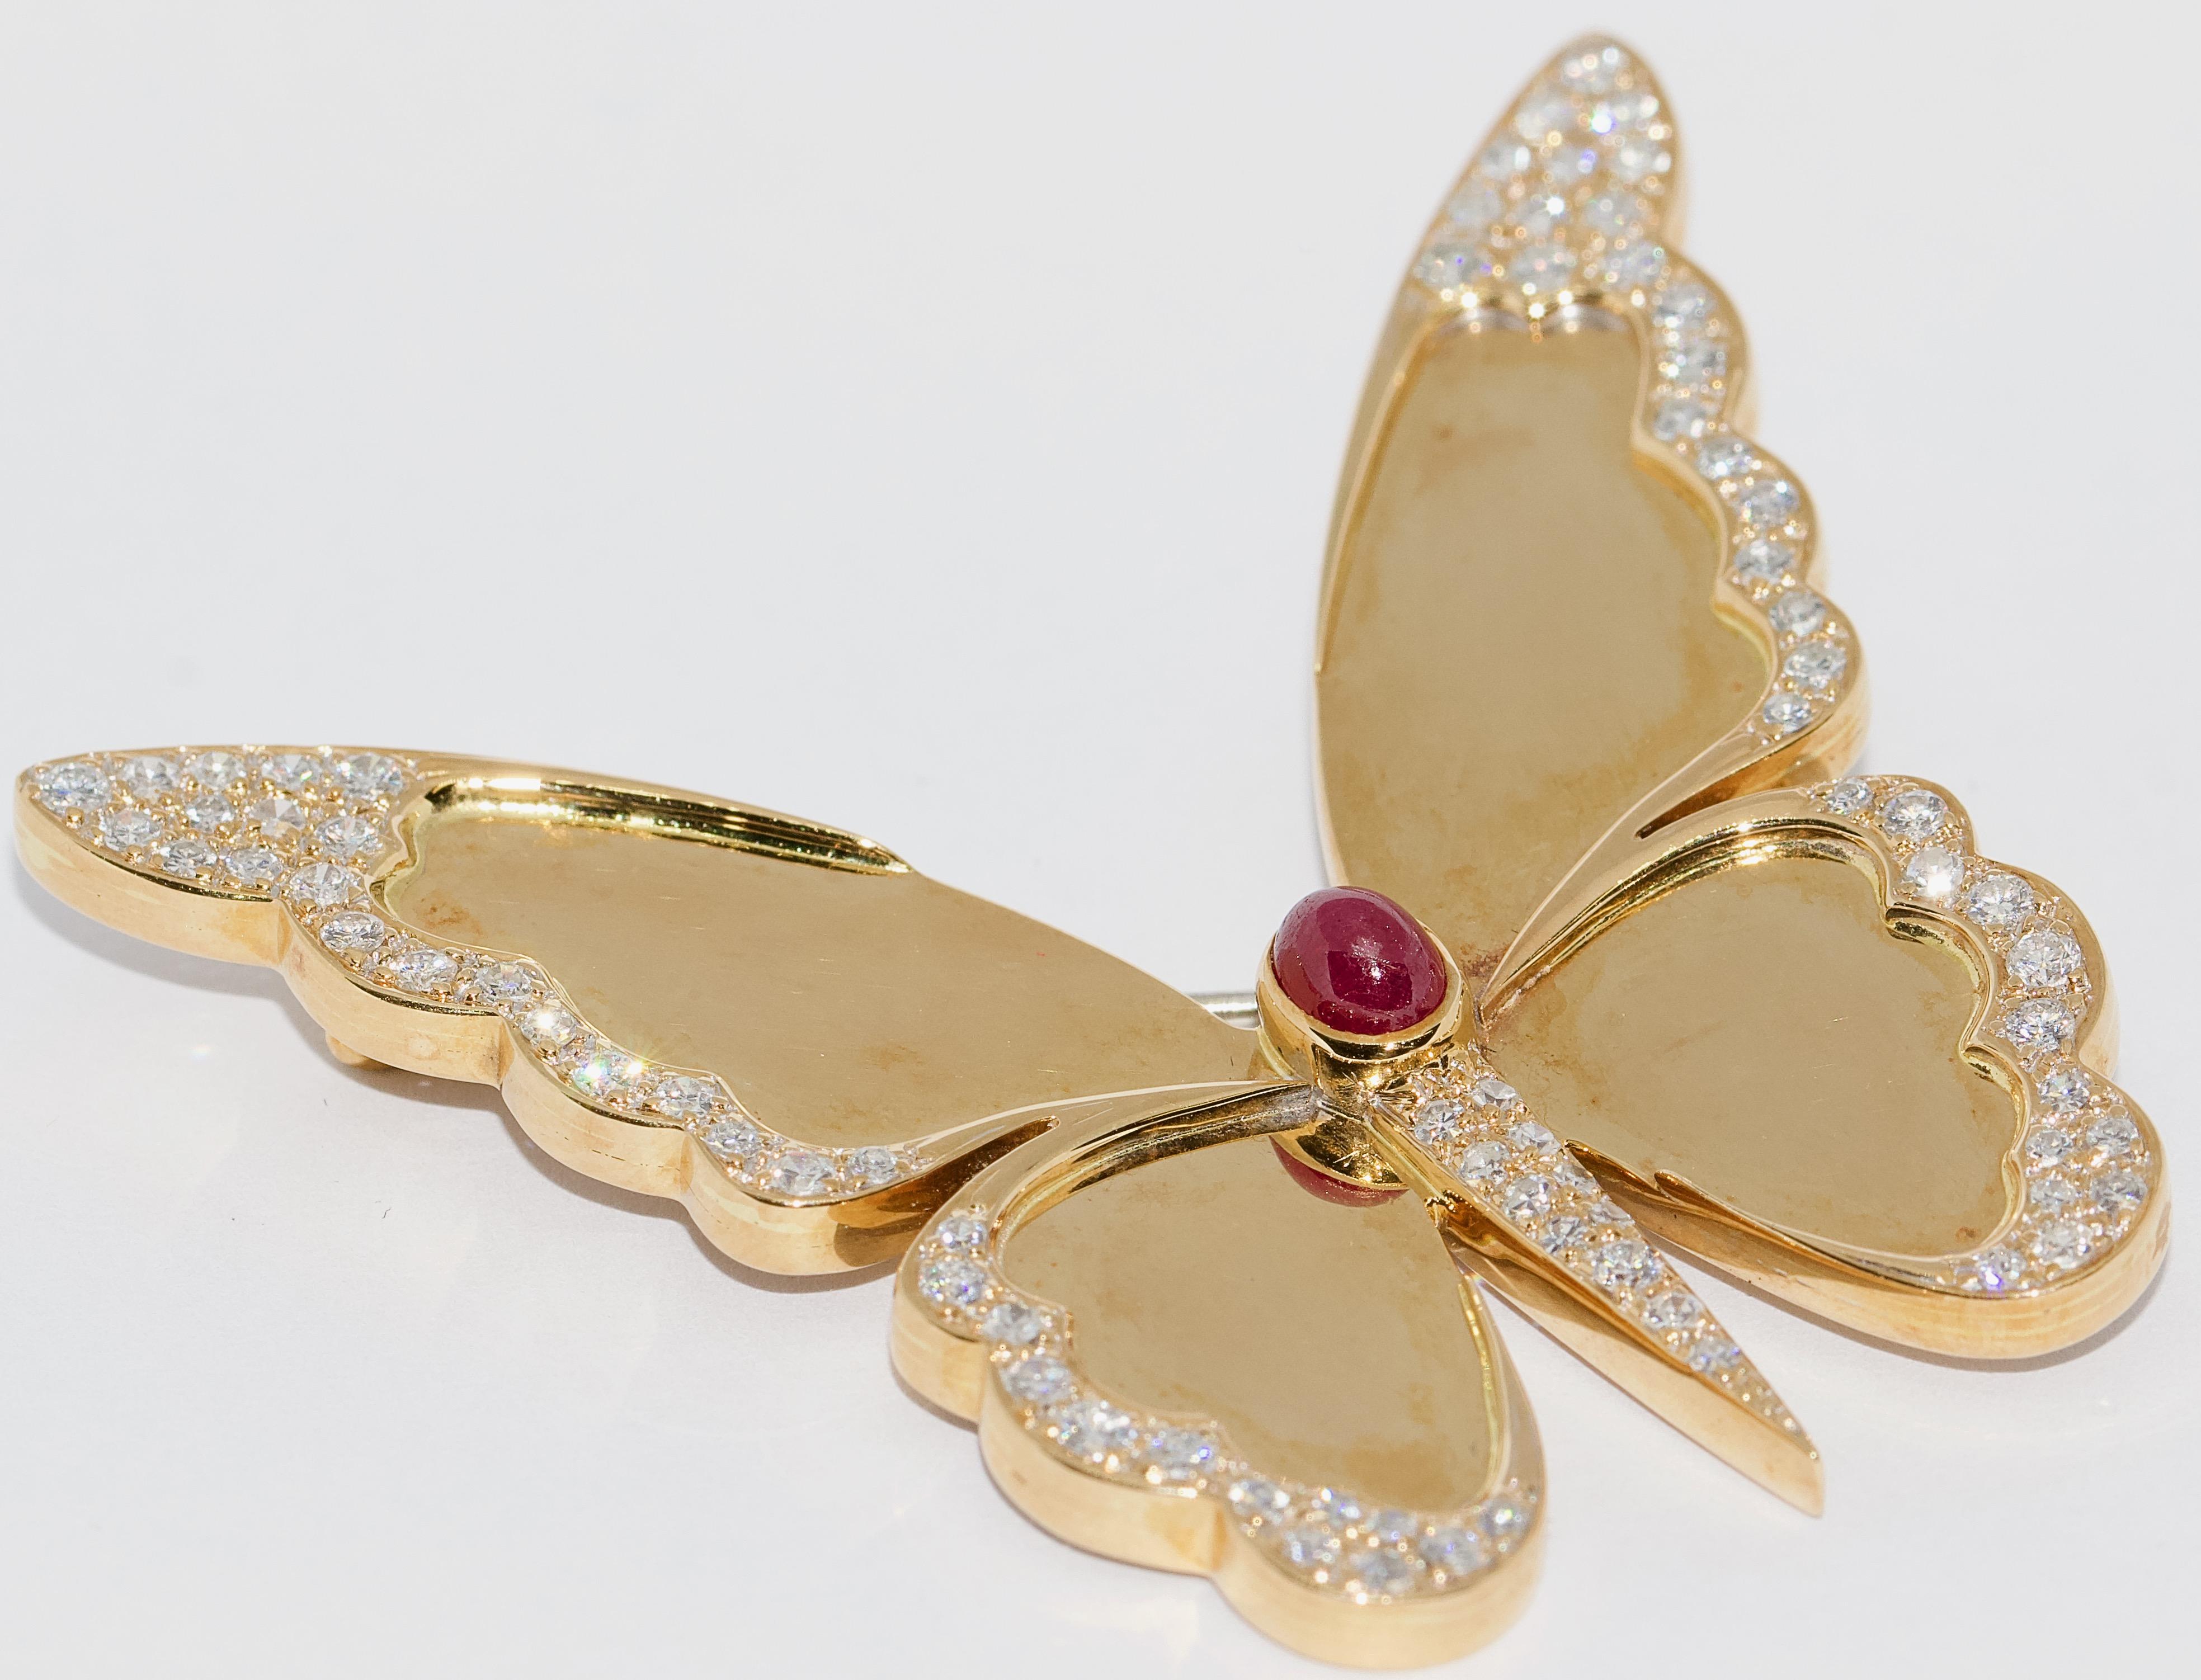 Bezaubernde, große und schwere Schmetterlingsbrosche, 18 Karat Gold mit Diamanten und Rubin.

Perfekter Zustand.
Mit Echtheitszertifikat.